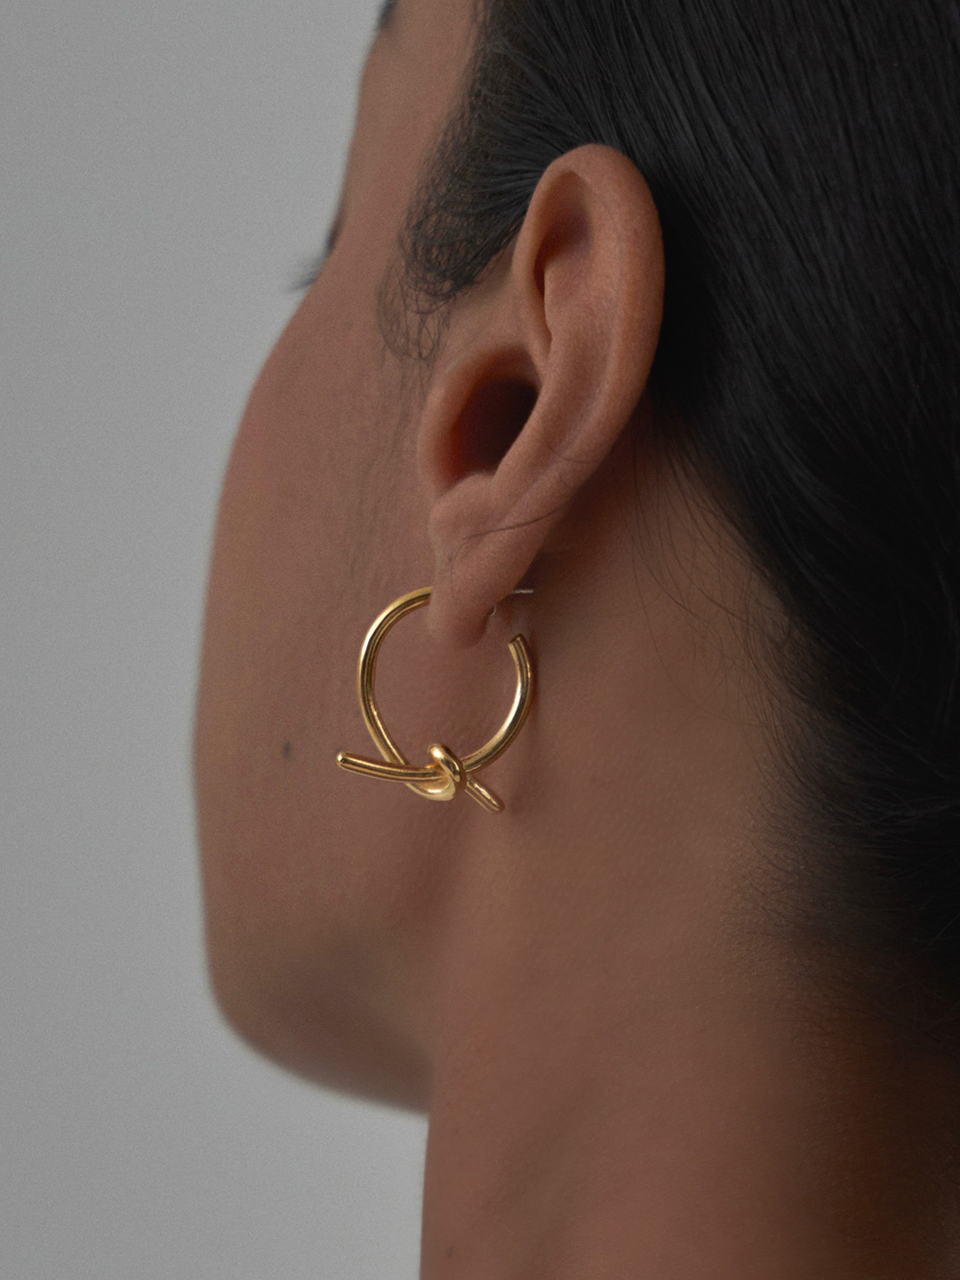 My twist gold tone earring